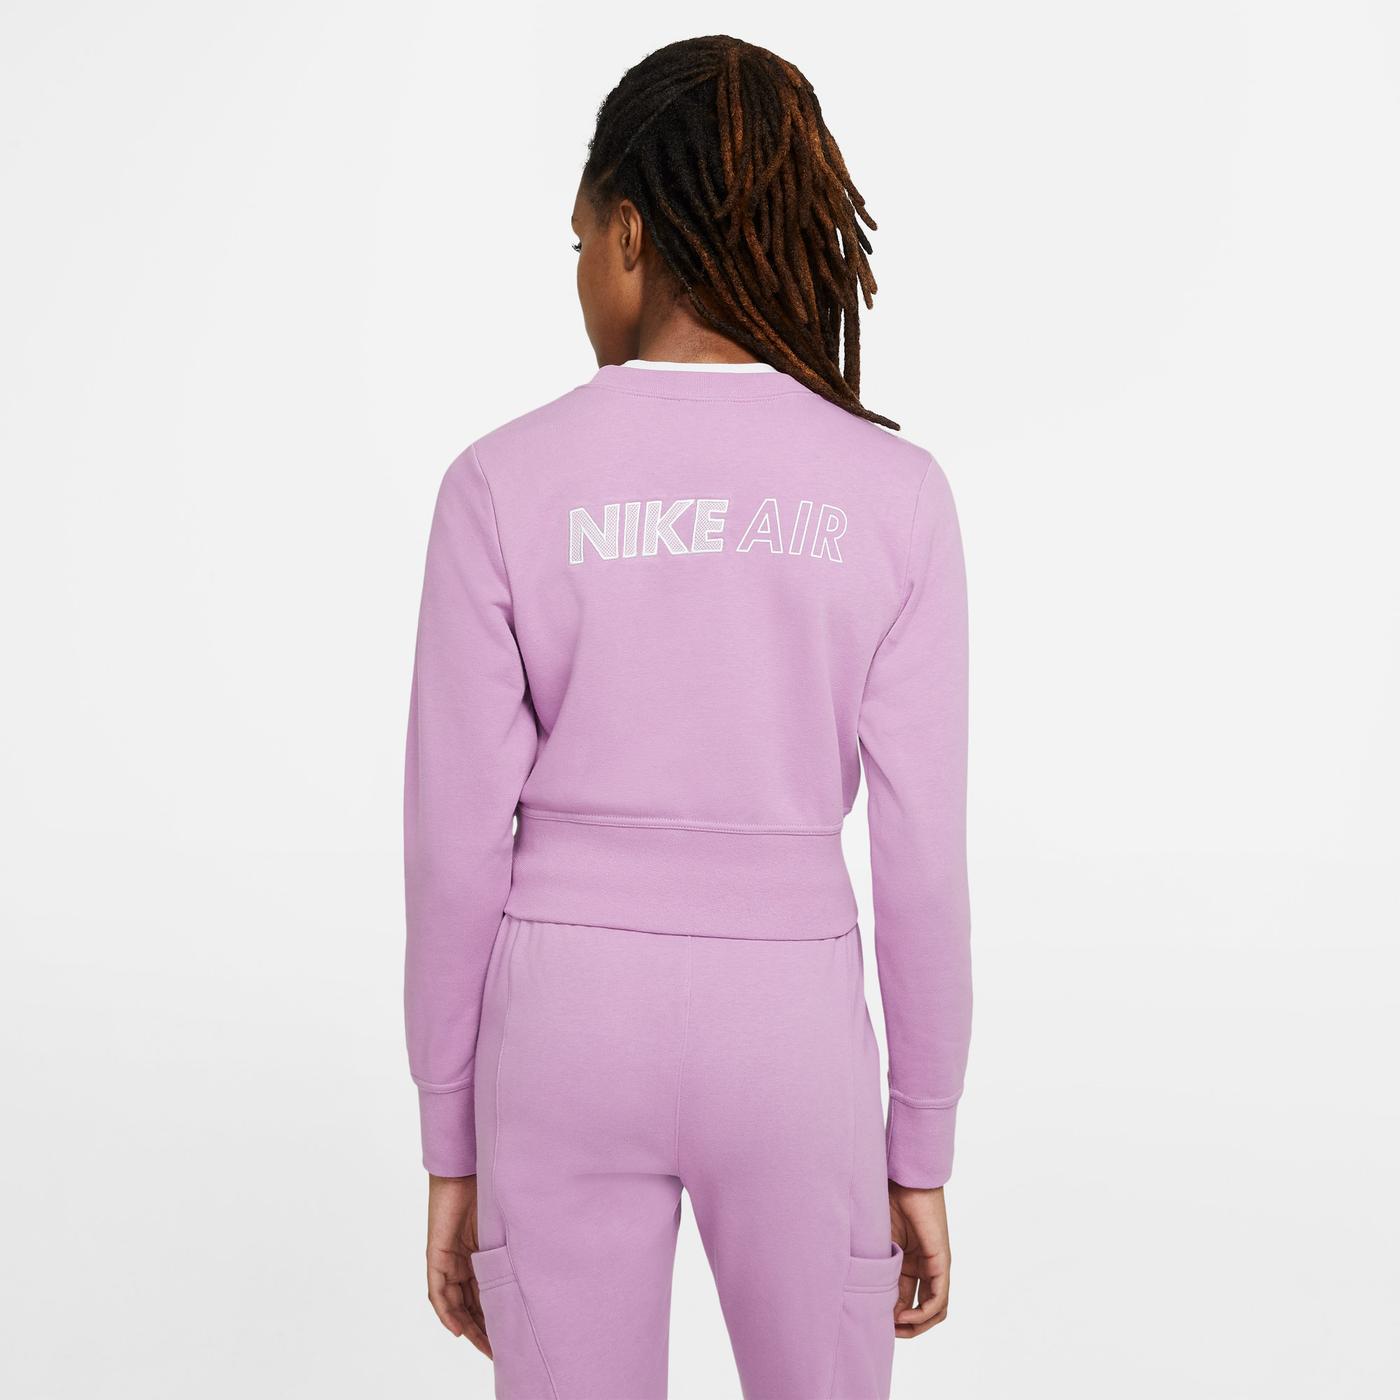 Nike Sportswear Air Crew Flc Kadın Mor Sweatshirt